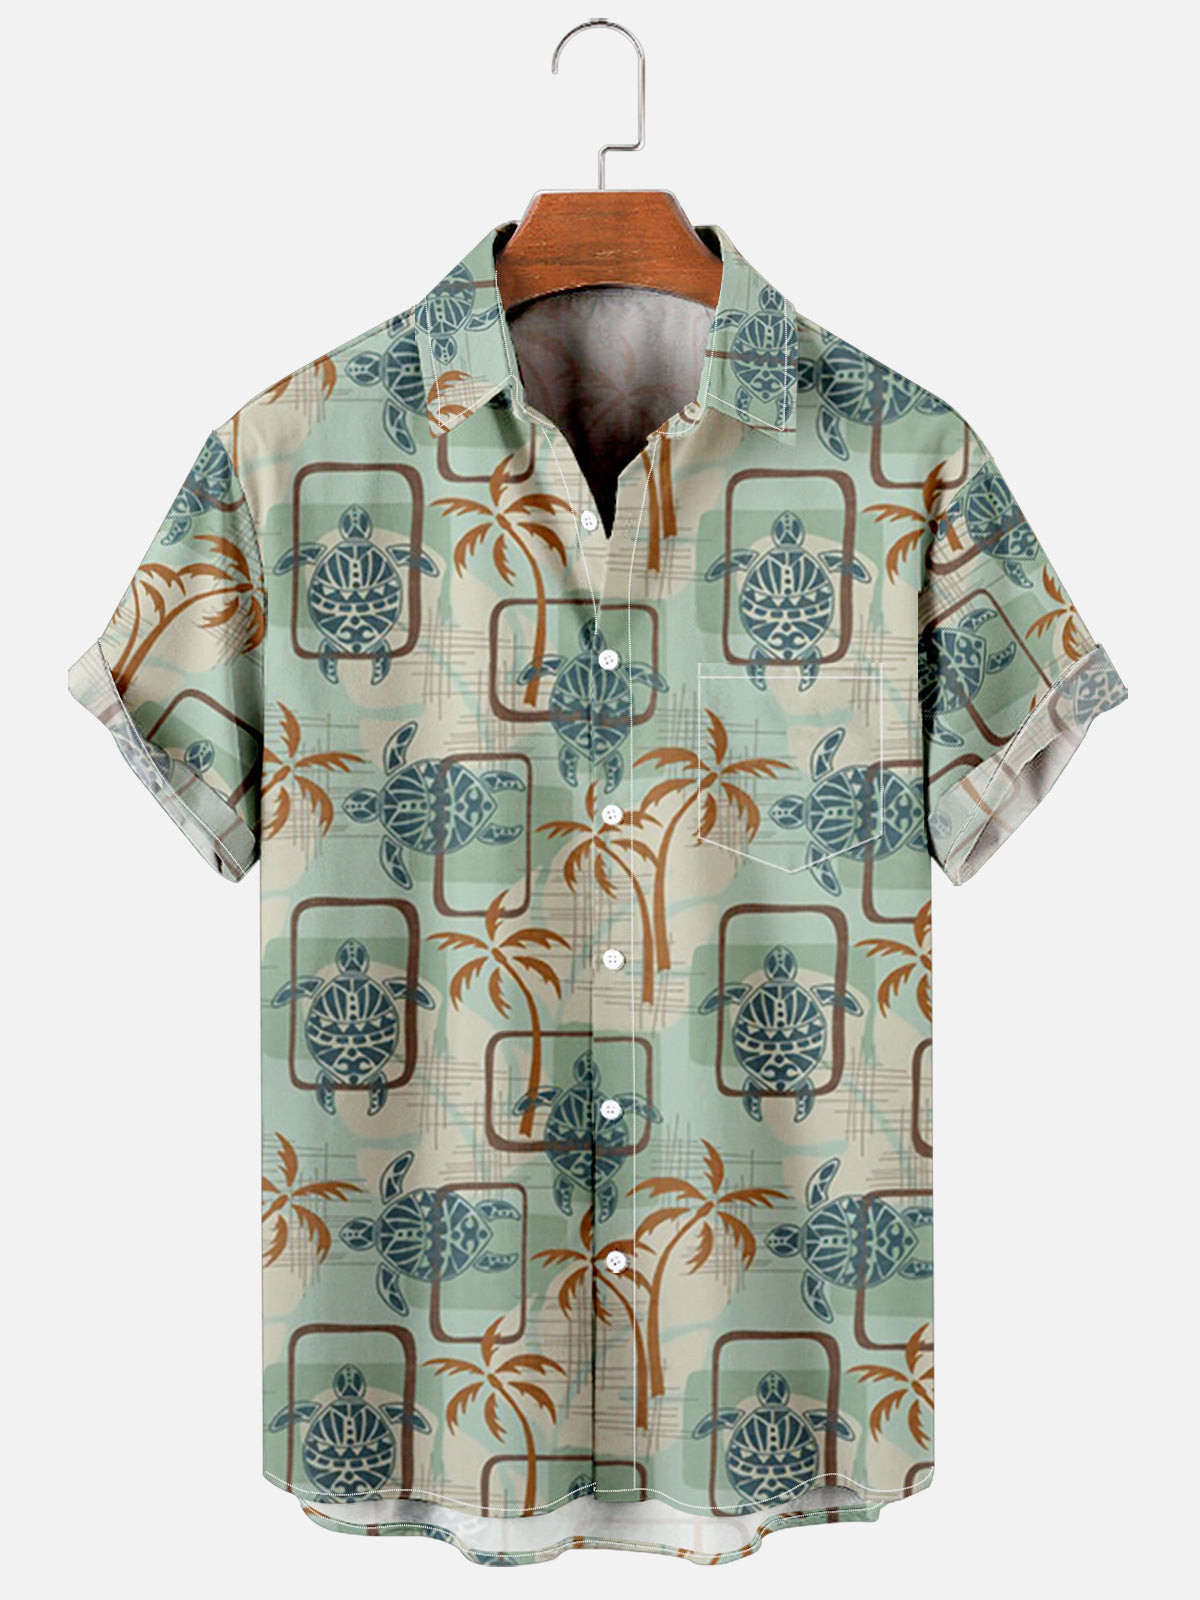 Coconut Tree And Turtle Printed Hawaiian Shirt Summer Hawaiian